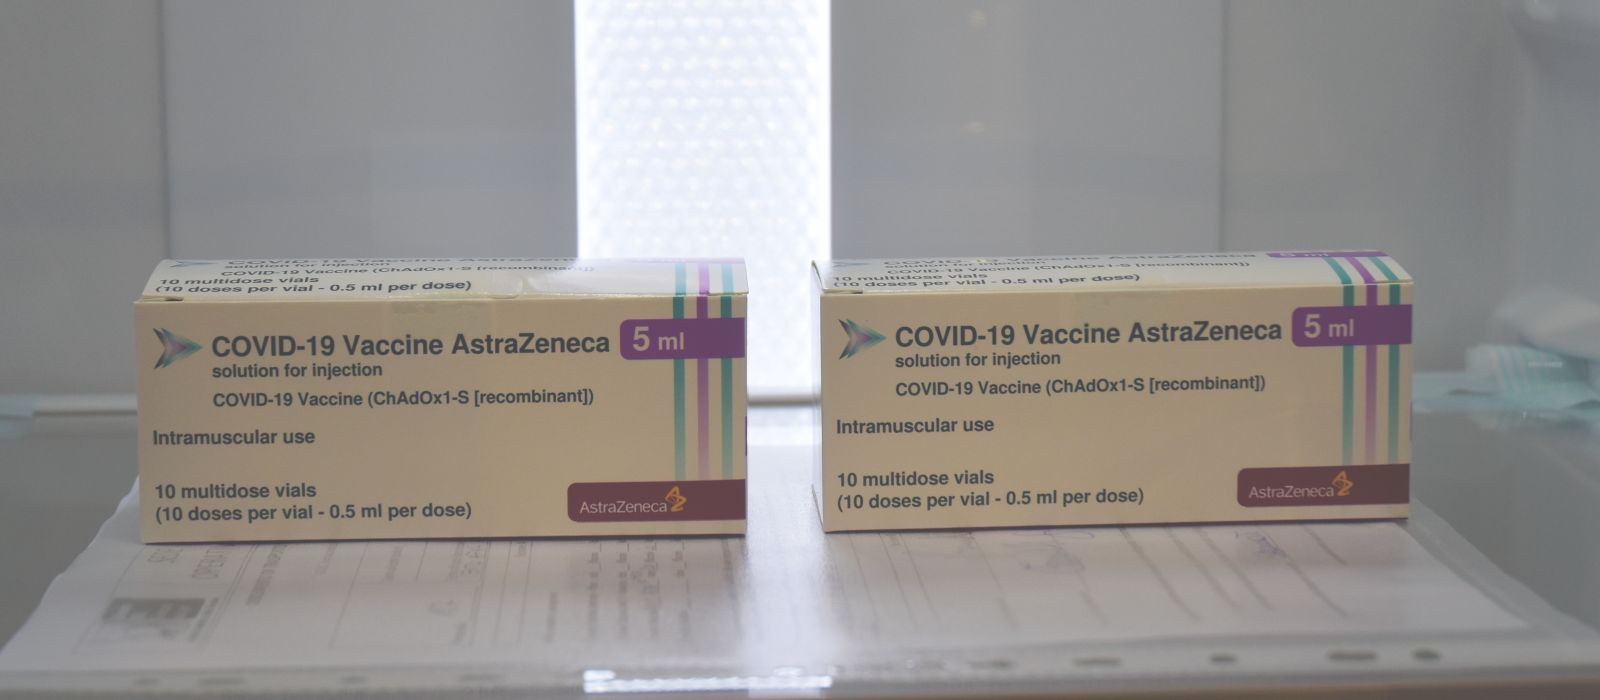 Vaccini anti-Covid, nuove dosi di AstraZeneca: riaperte le prenotazioni